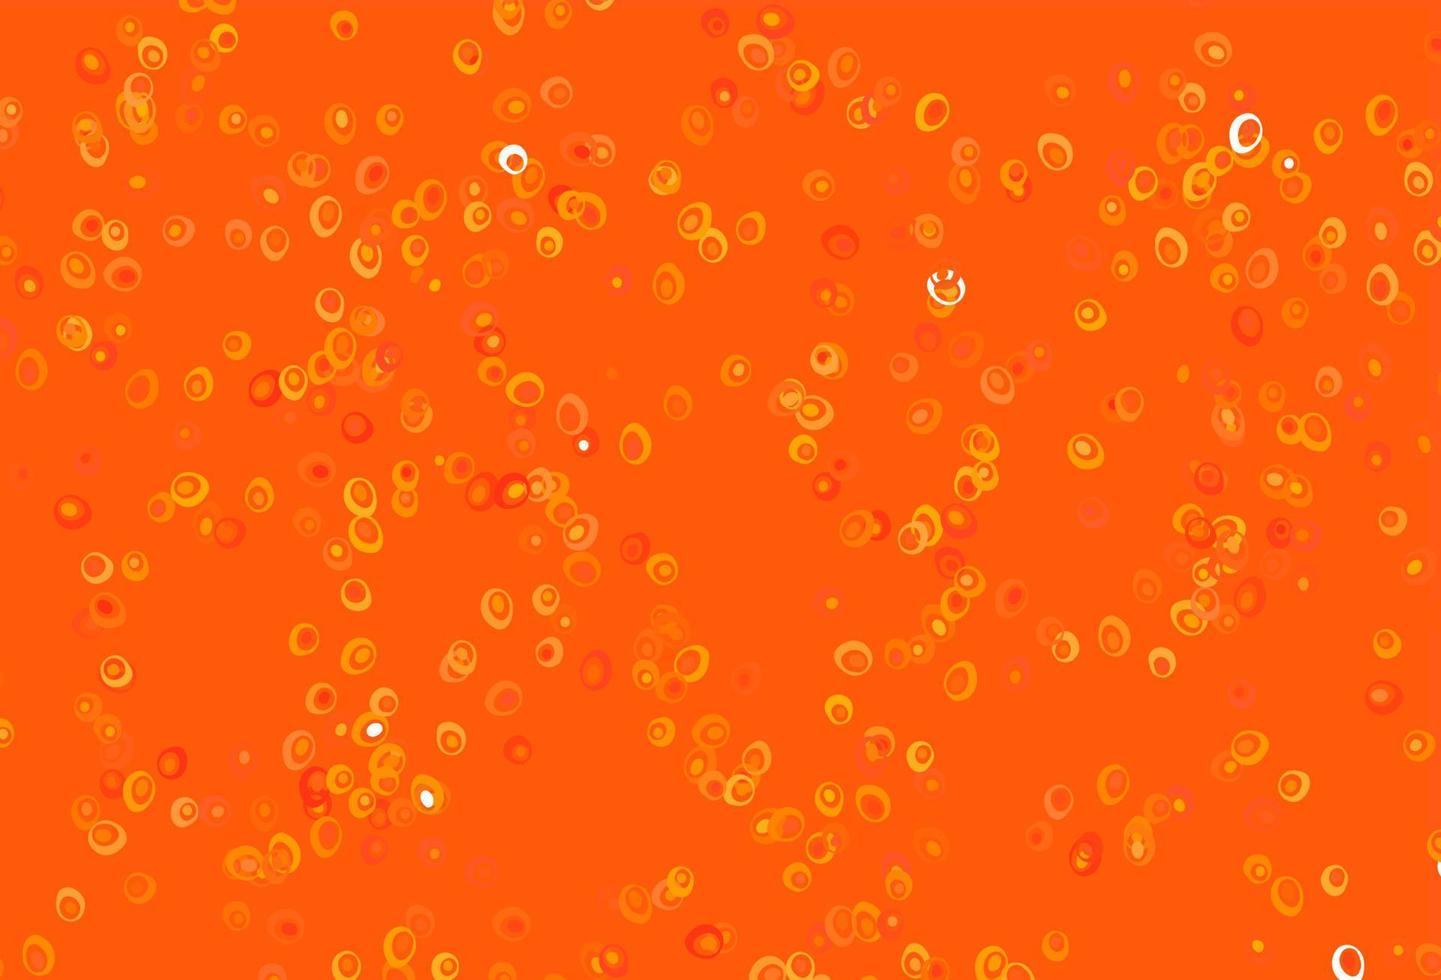 ljusgult, orange vektorkåpa med fläckar. vektor